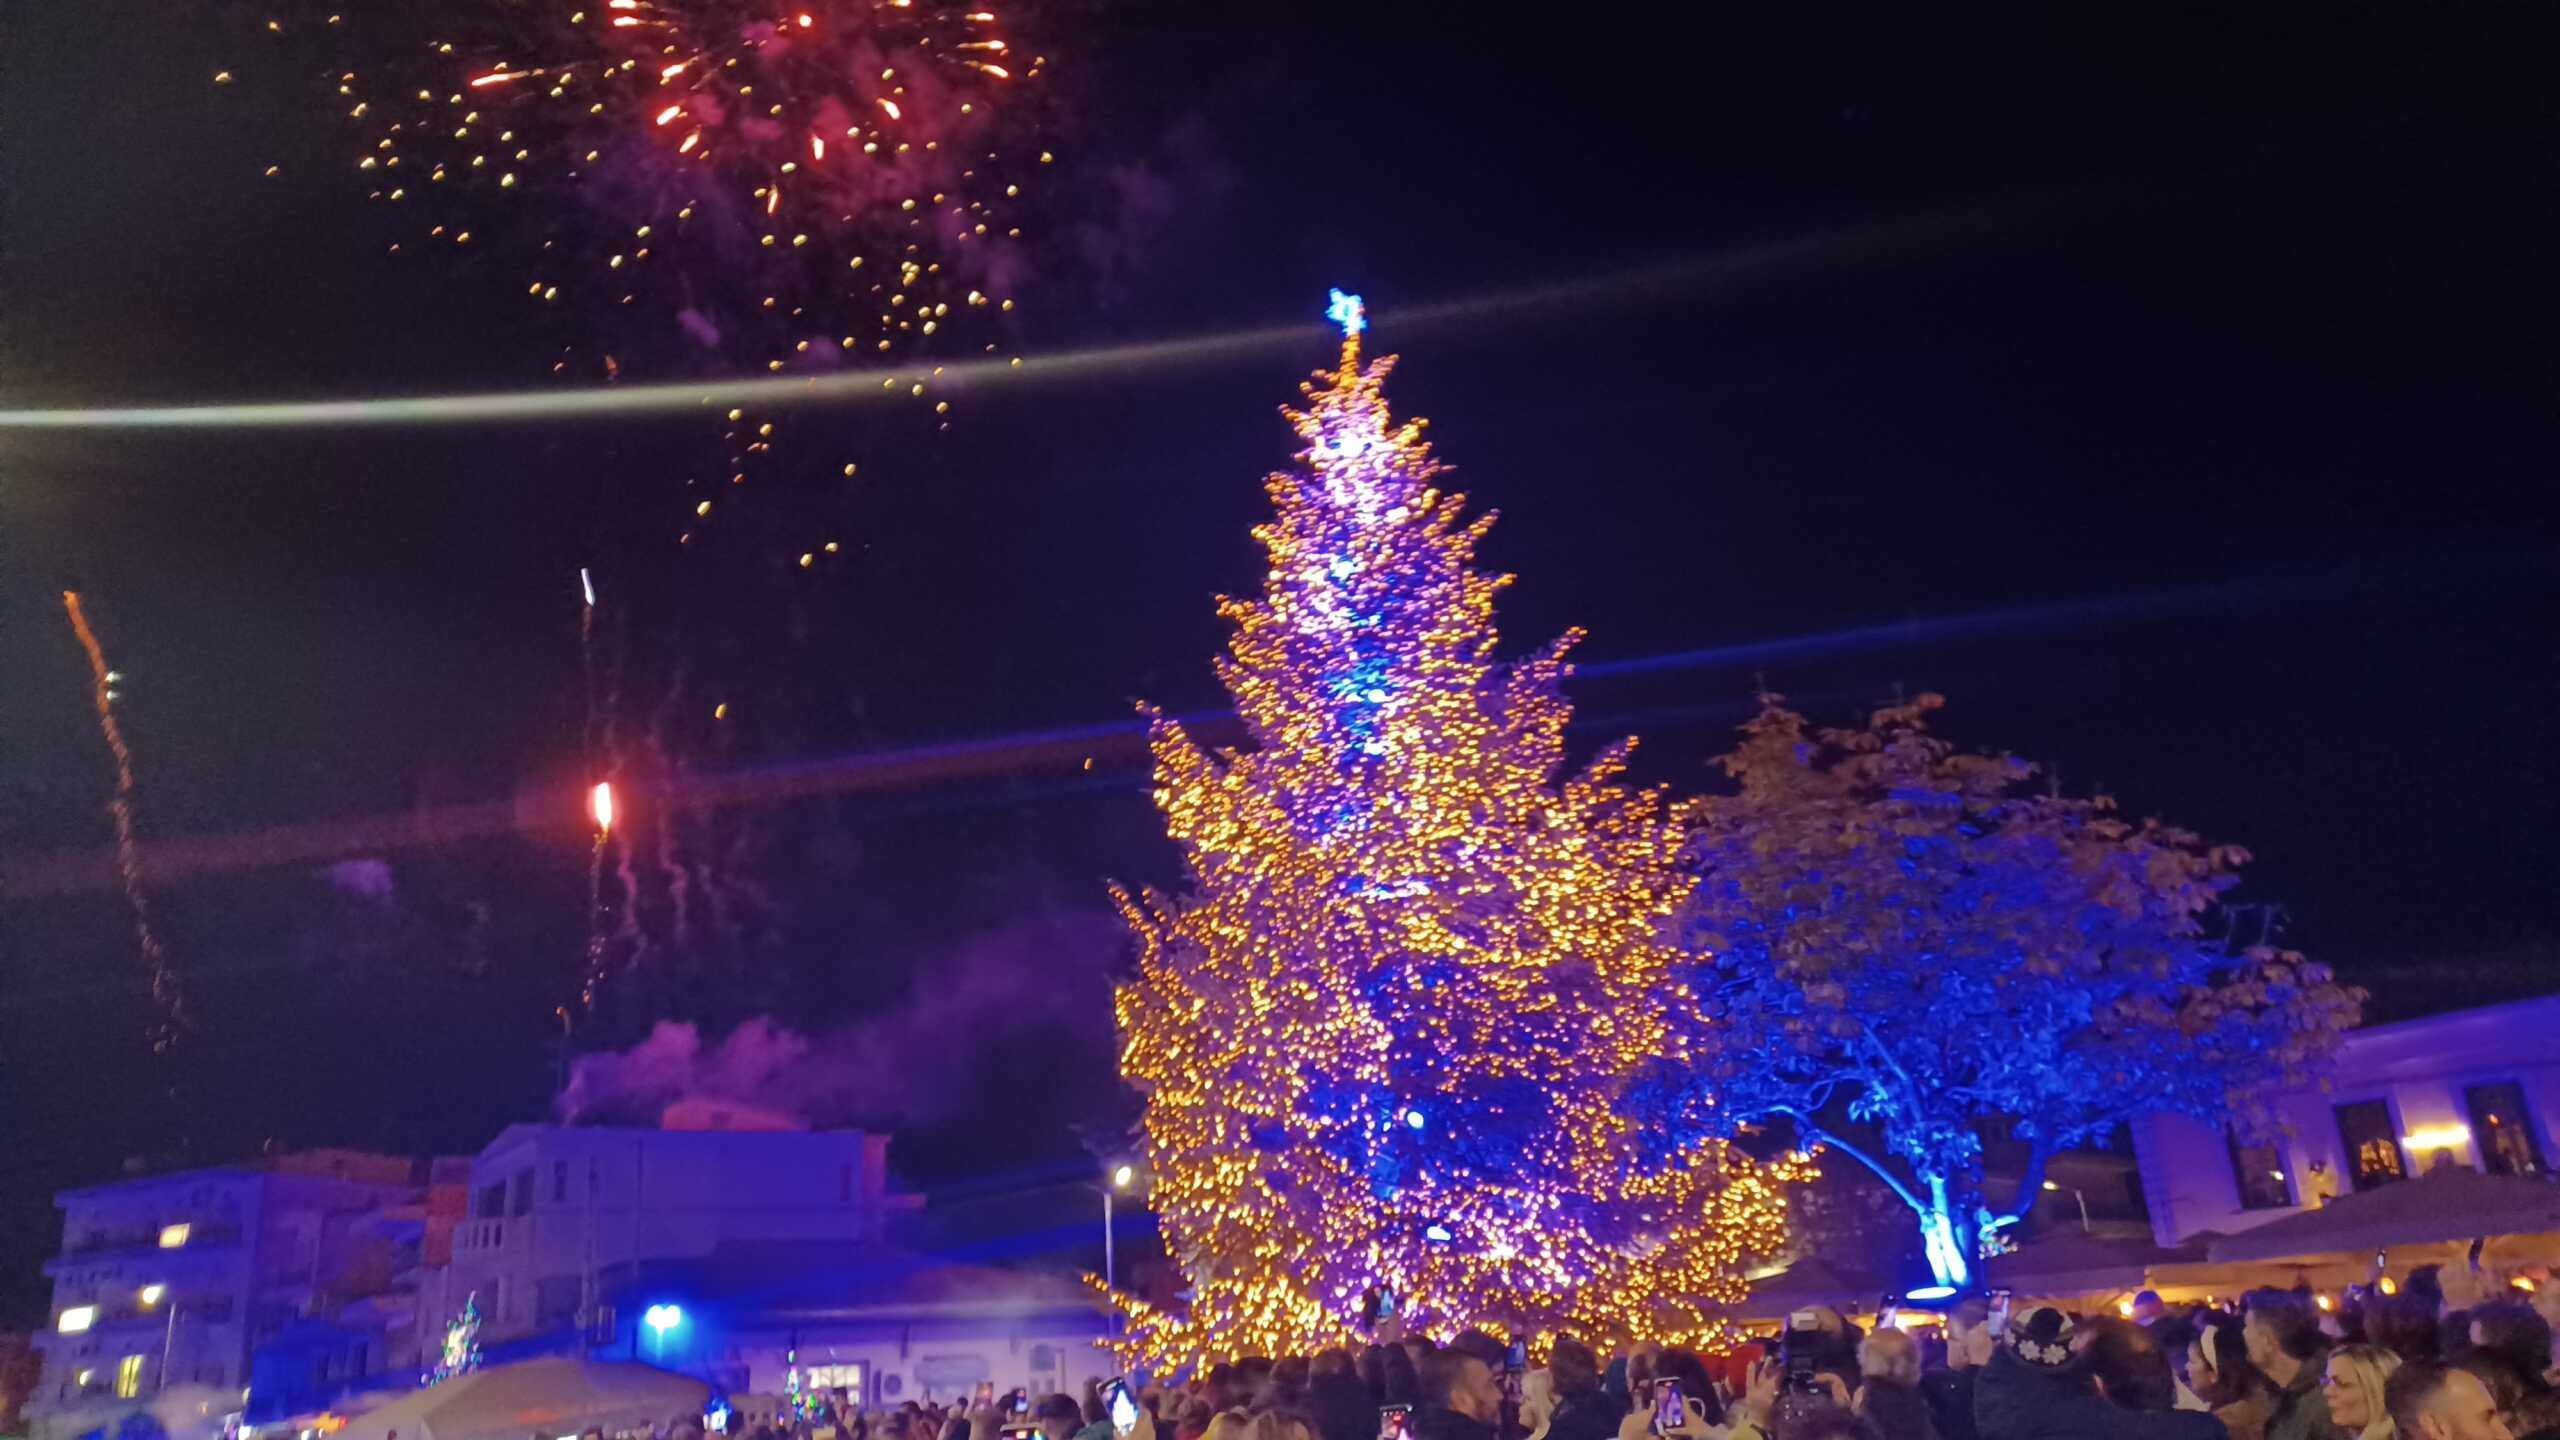 Γιορτινή ατμόσφαιρα στο Δήμο Ιστιαίας Αιδηψού – Φωταγωγήθηκε δέντρο 14 μ. από τα Καρπάθια Όρη